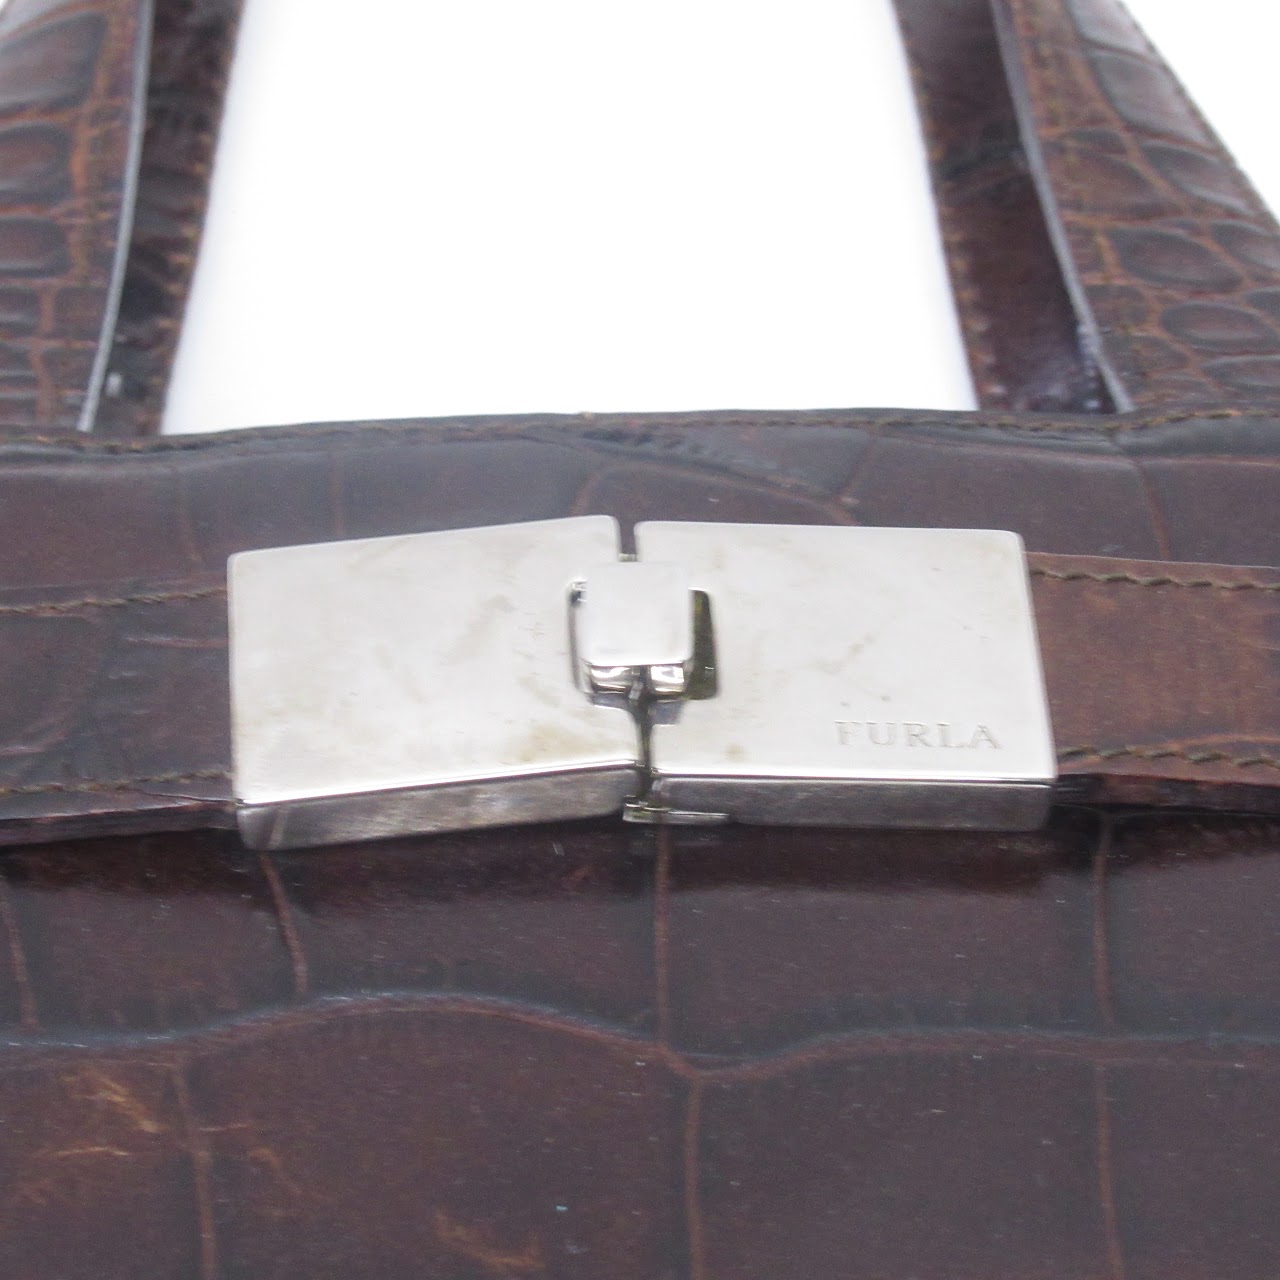 Furla Crocodile Embossed Leather Handbag